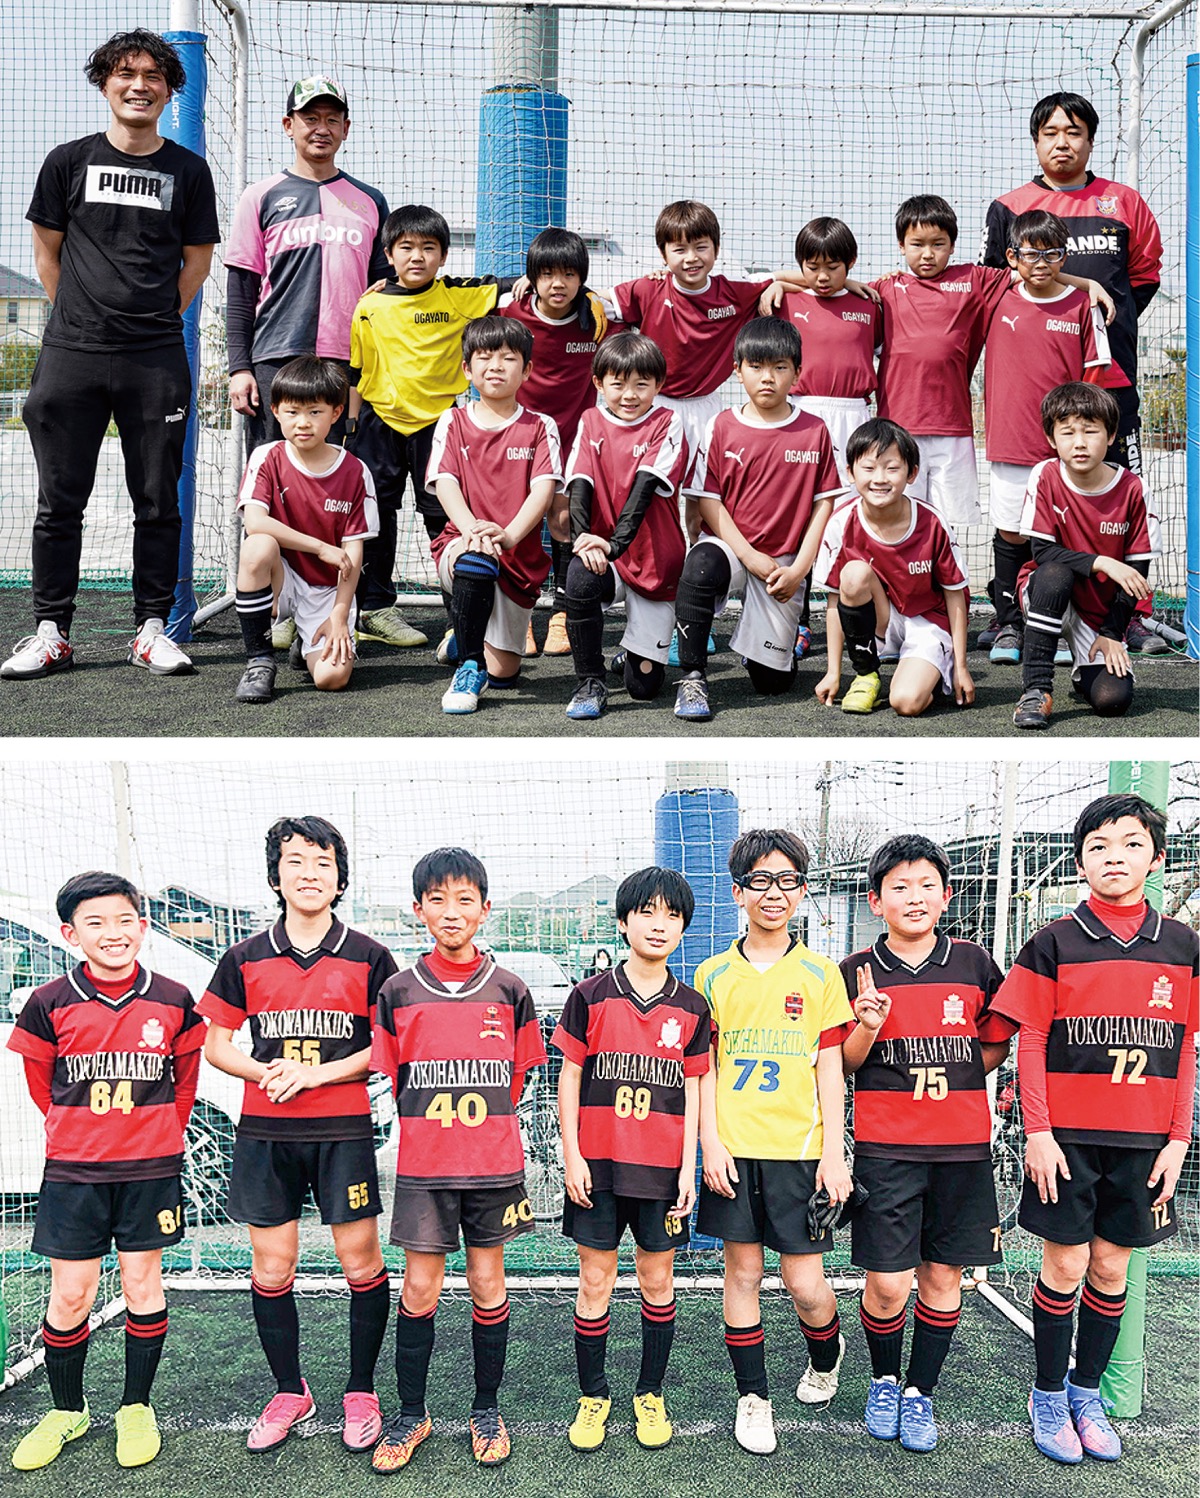 横浜寿ライオンズクラブ 初のサッカー大会主催 小学生に活躍の場提供 南区 タウンニュース